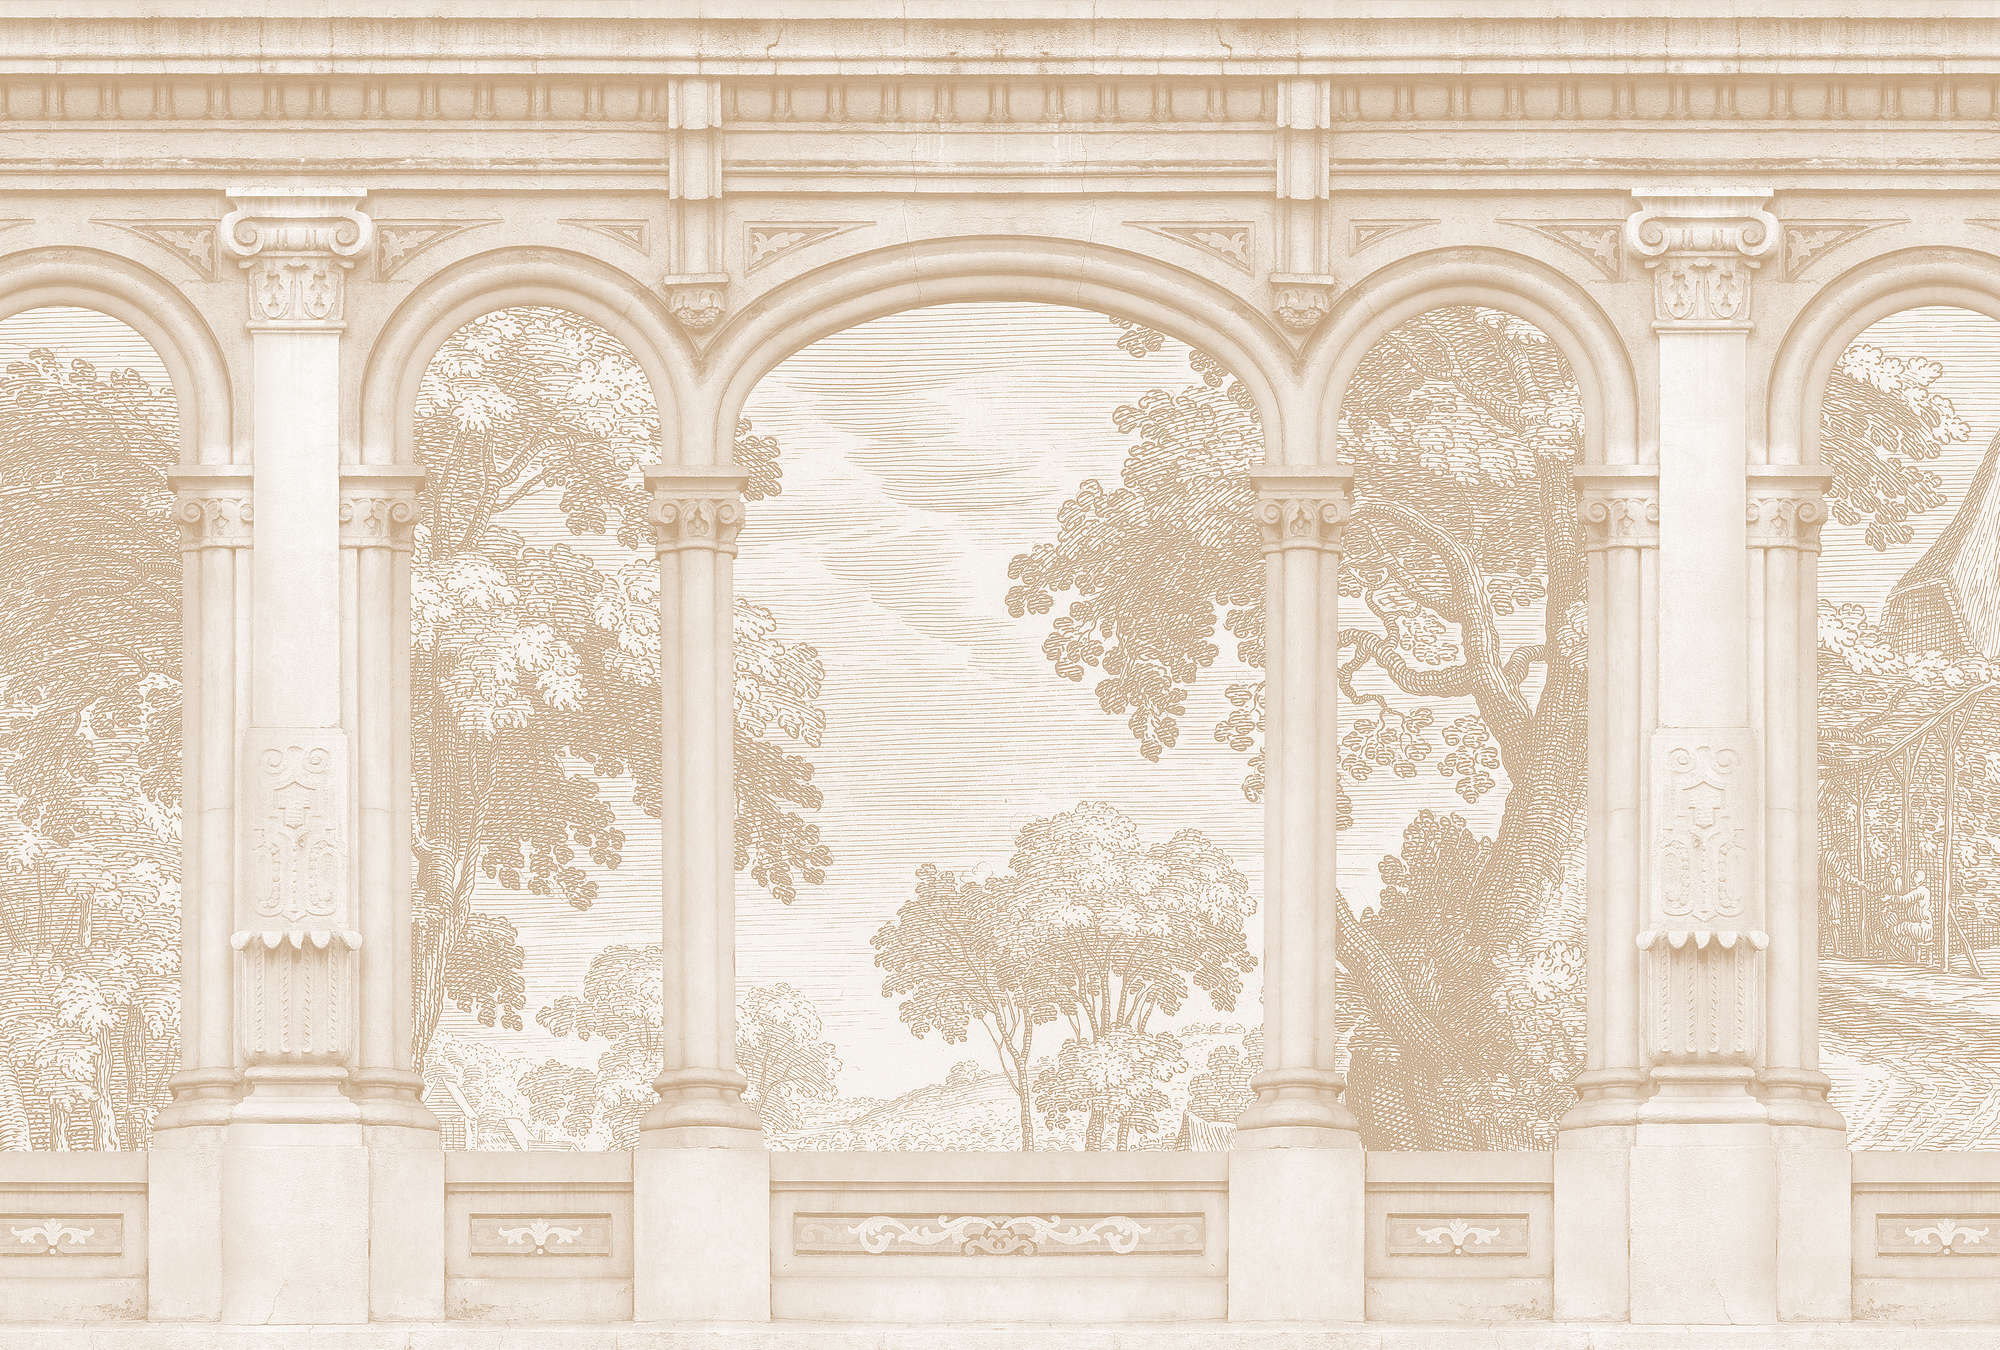             Roma 2 - Carta da parati fotografica beige Design storico con finestra ad arco a tutto sesto
        